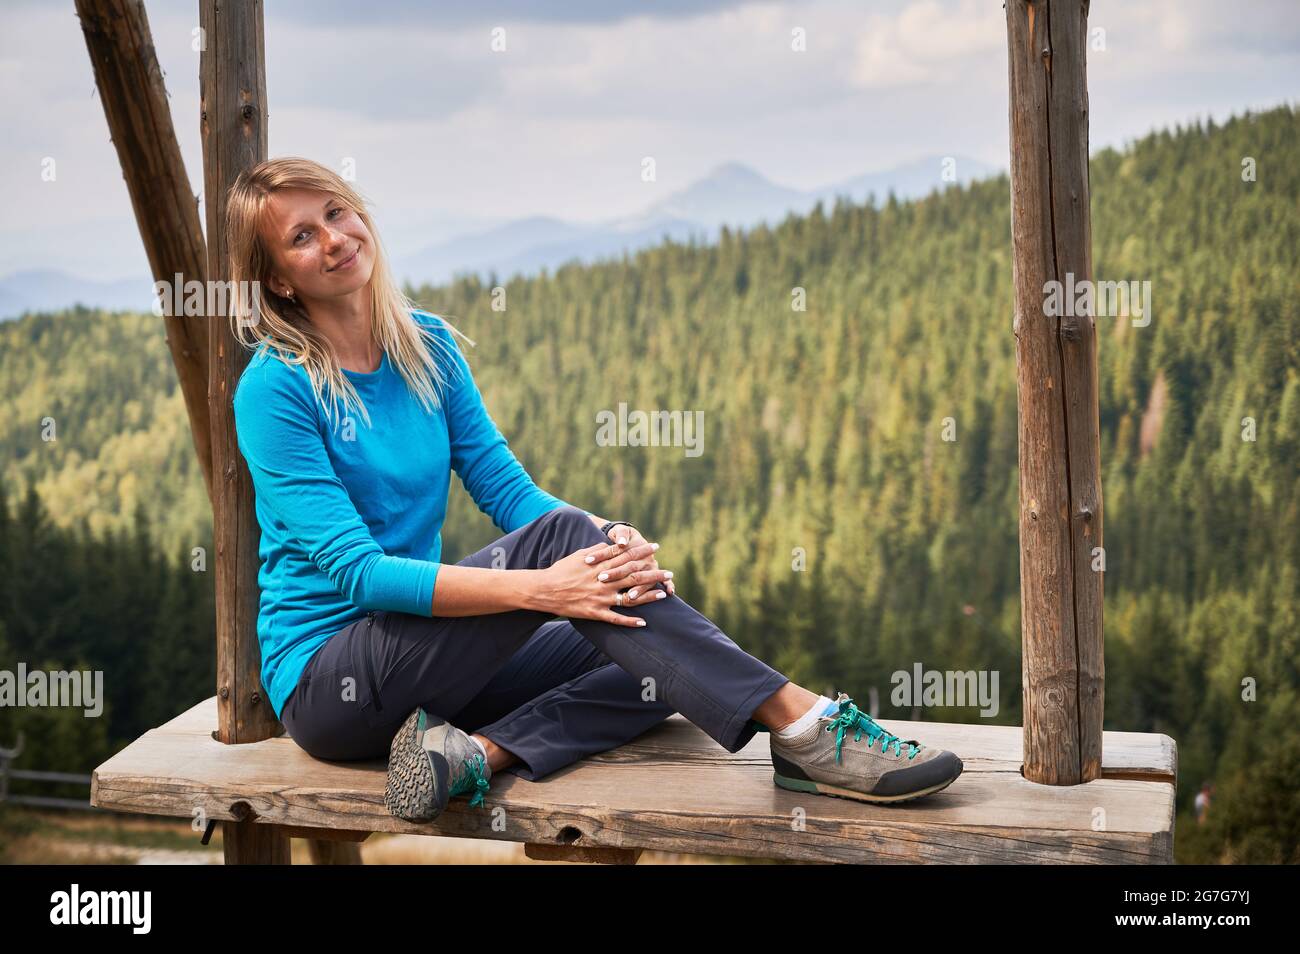 Portrait d'une gentille dame dans un chemisier bleu qui mignonne assis et souriant tout en se relaxant sur une énorme balançoire en bois à la chaude journée d'été. Sur la forêt de fond, silhouettes de collines de montagne et ciel gris. Banque D'Images